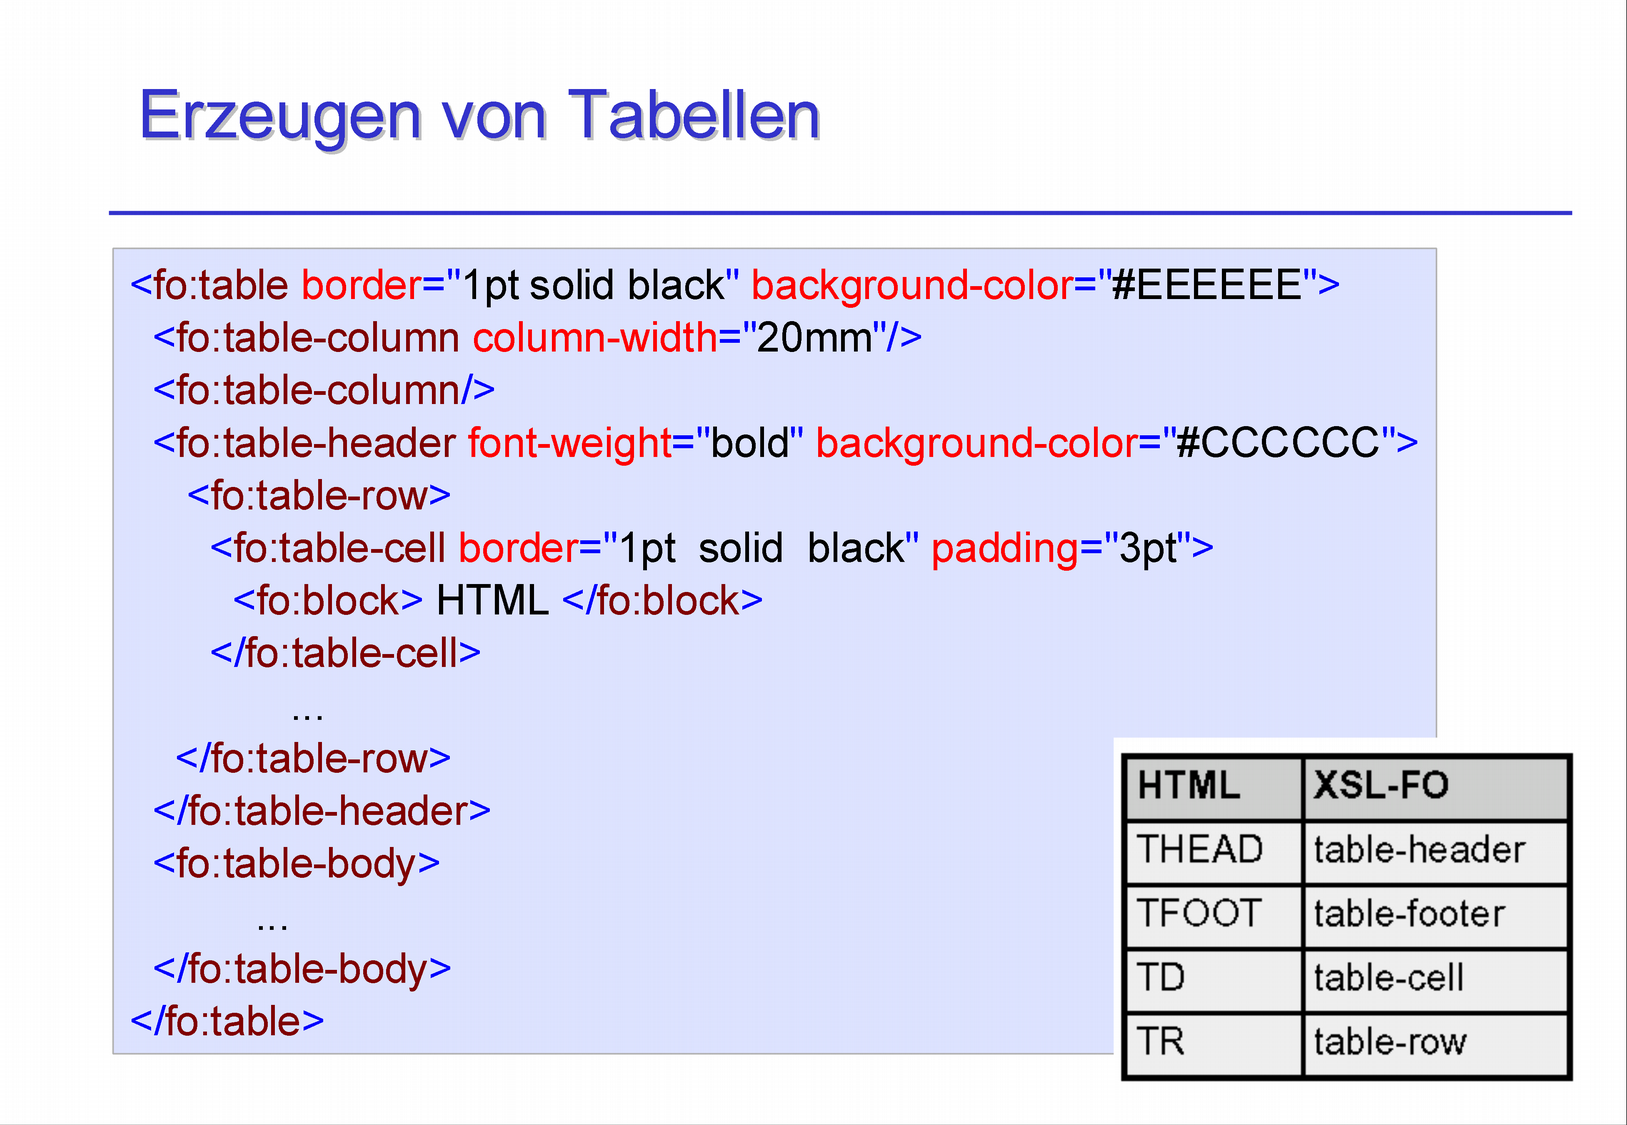 11.2.1 Erzeugen von Tabellen Zum Erzeugen von Tabellen gibt es die Elemente: fo:table, fo:table-body, fo:table-cell, fo:table-column, fo:table-footer, fo:table-header, fo:table-row fo:table enhält